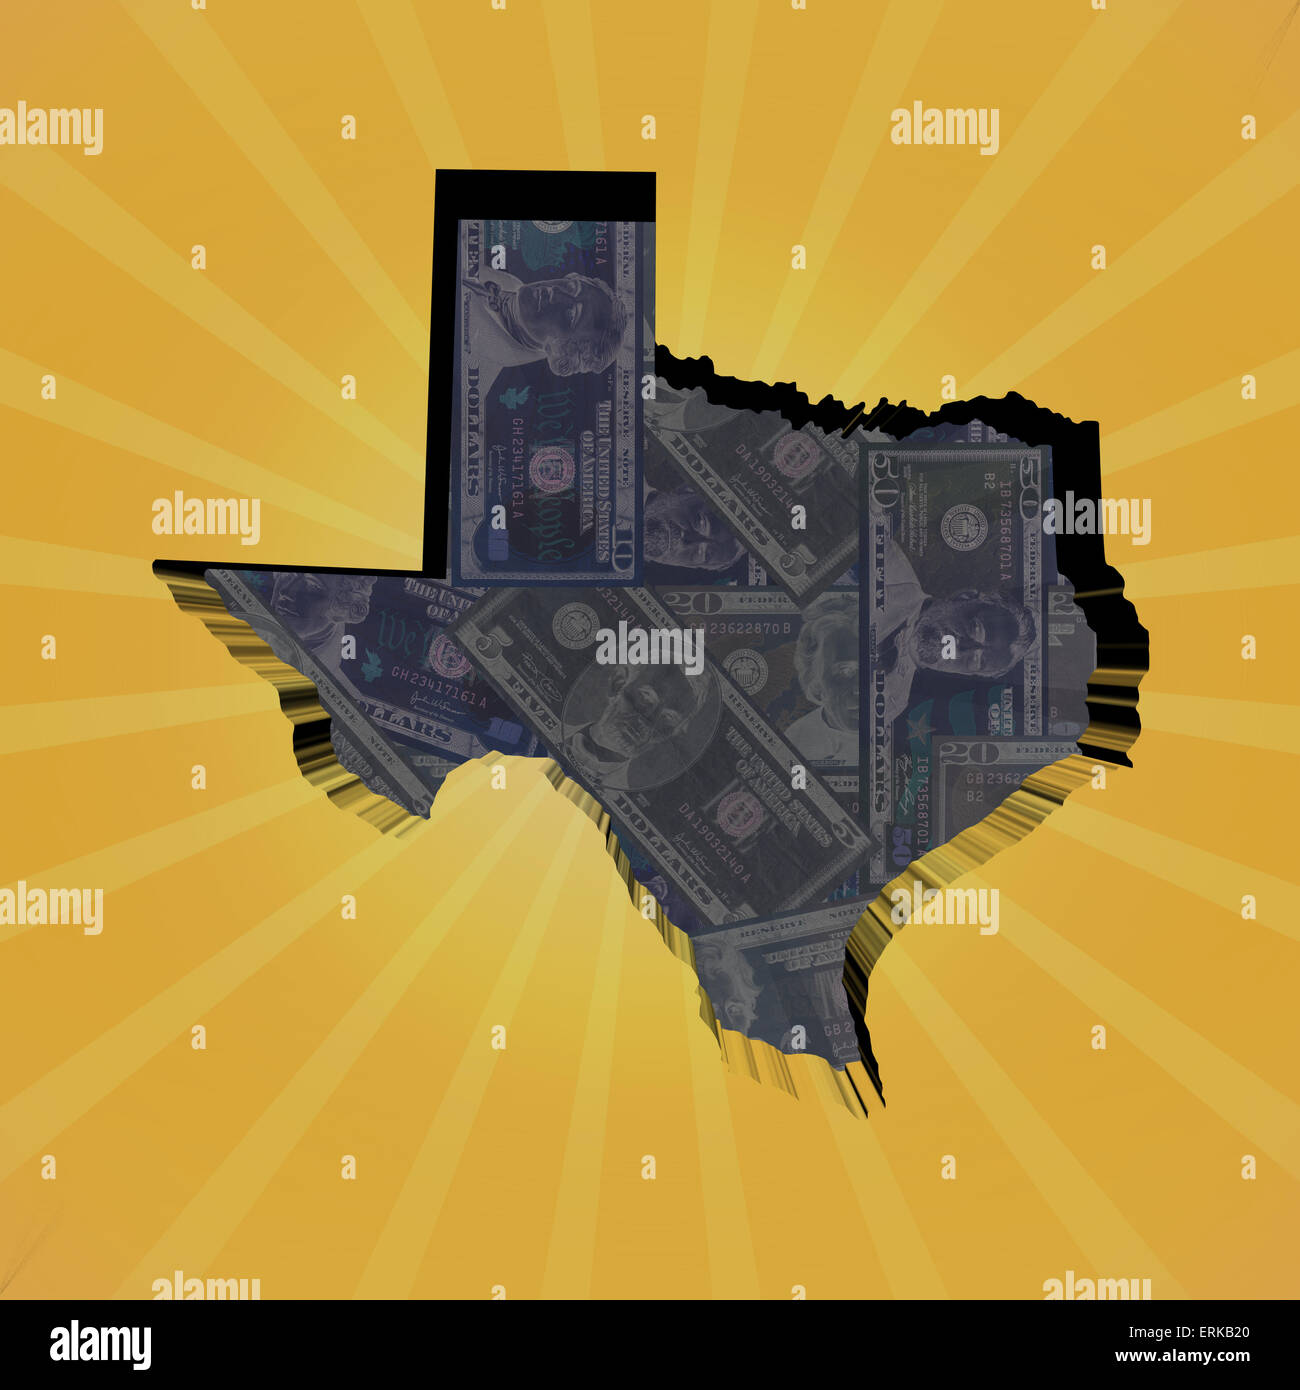 Texas map on dollars sunburst illustration Stock Photo